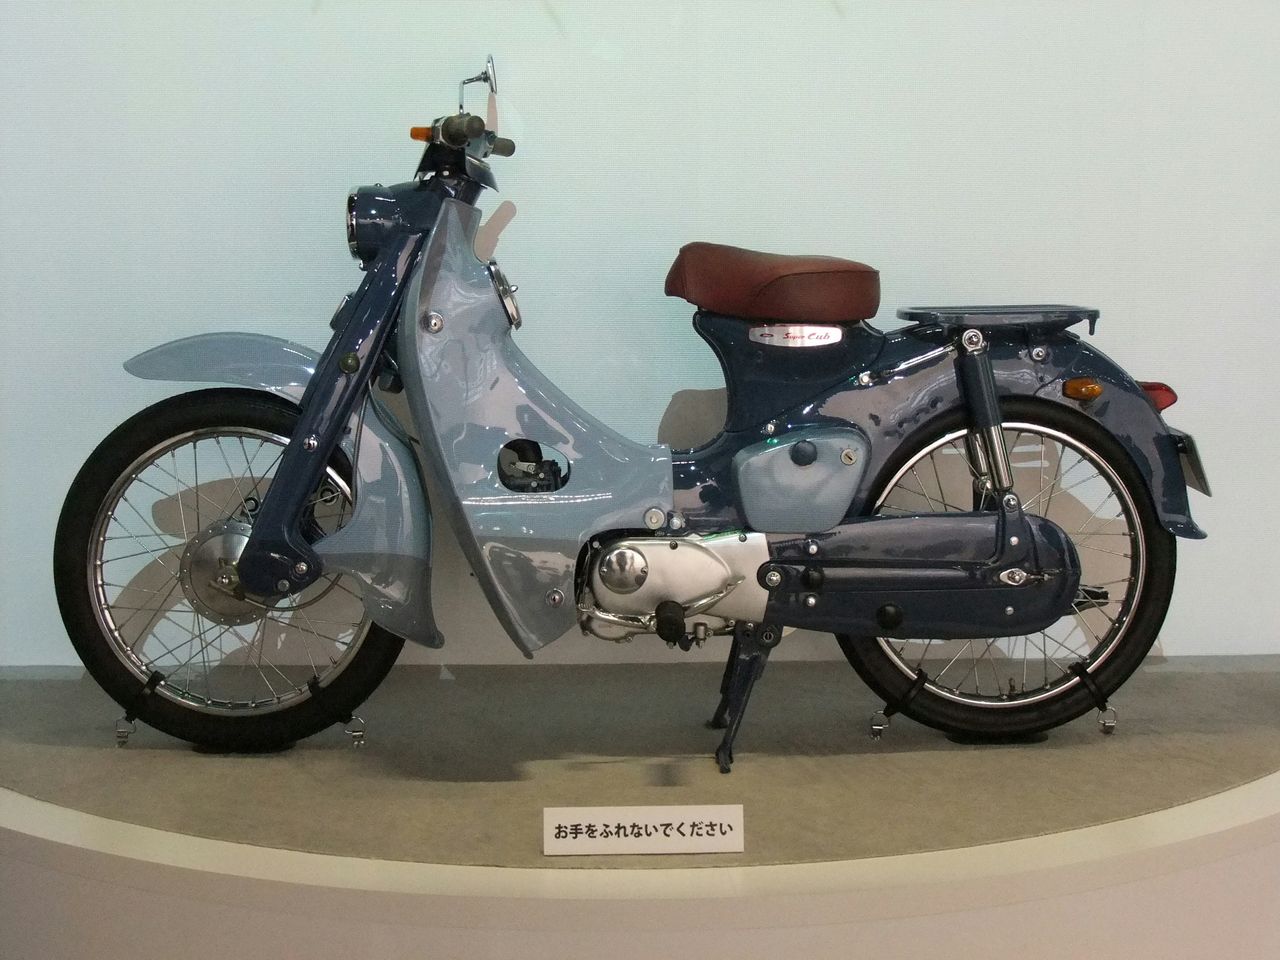 Honda Super Cub 1958 r. - motocykl typu "underbone", w którym zastosowano po raz pierwszy automatyczne sprzęgło współpracujące ze skrzynią biegów o czterech przełożeniach.